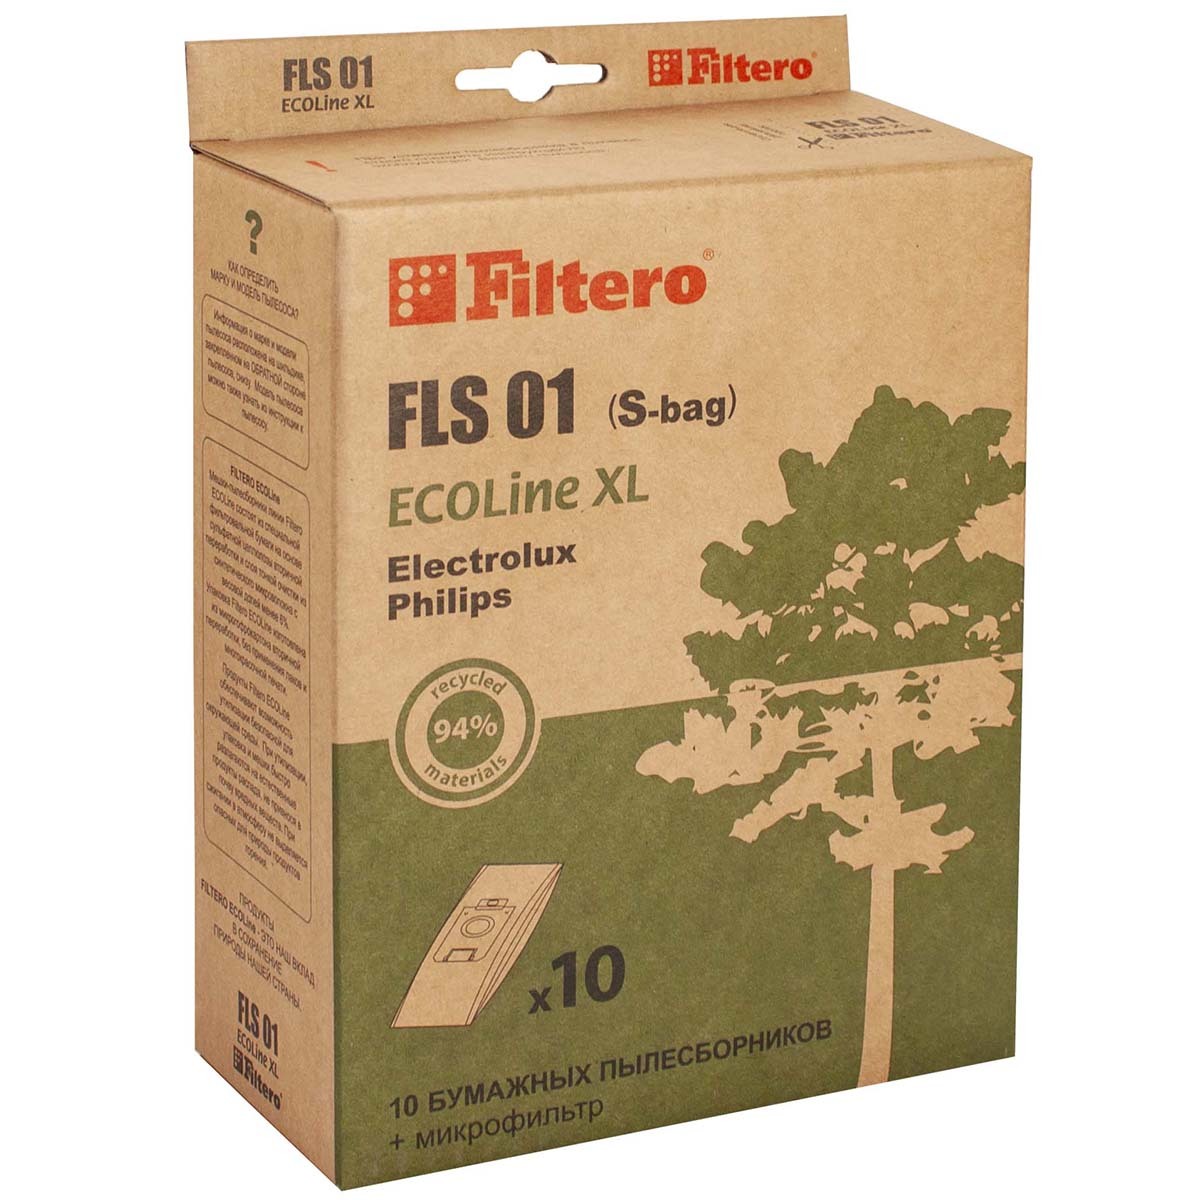 Пылесборники Filtero FLS 01 (S-bag) (10+) XL ECOLine пылесборники filtero fls 01 8